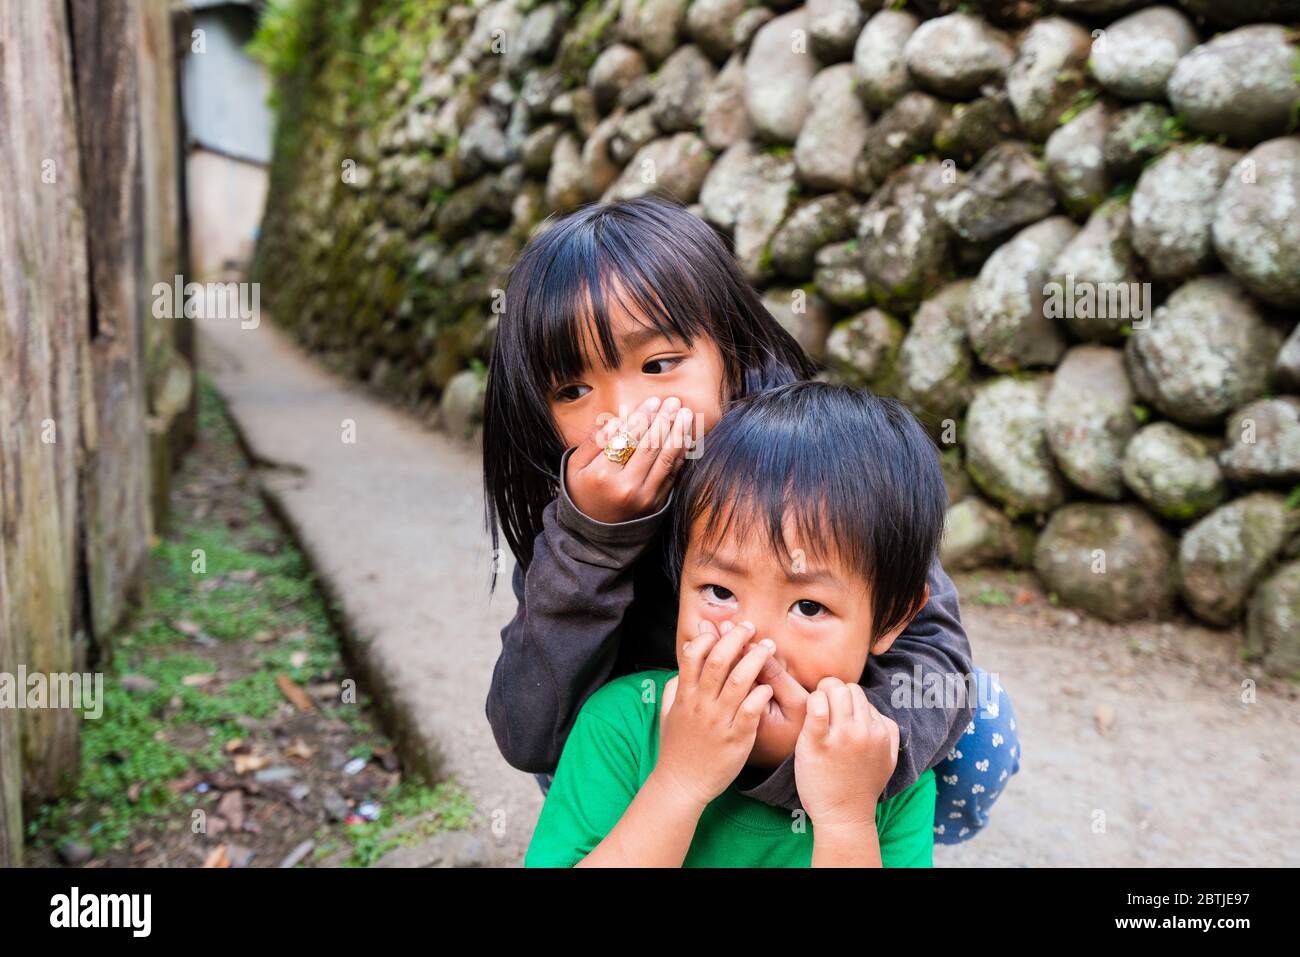 Kinder aus Asien, die sich vor einer Pandemie schützen, die den Mund auf einem bedeckt, ist allein, weil es keine Masken gibt Stockfoto